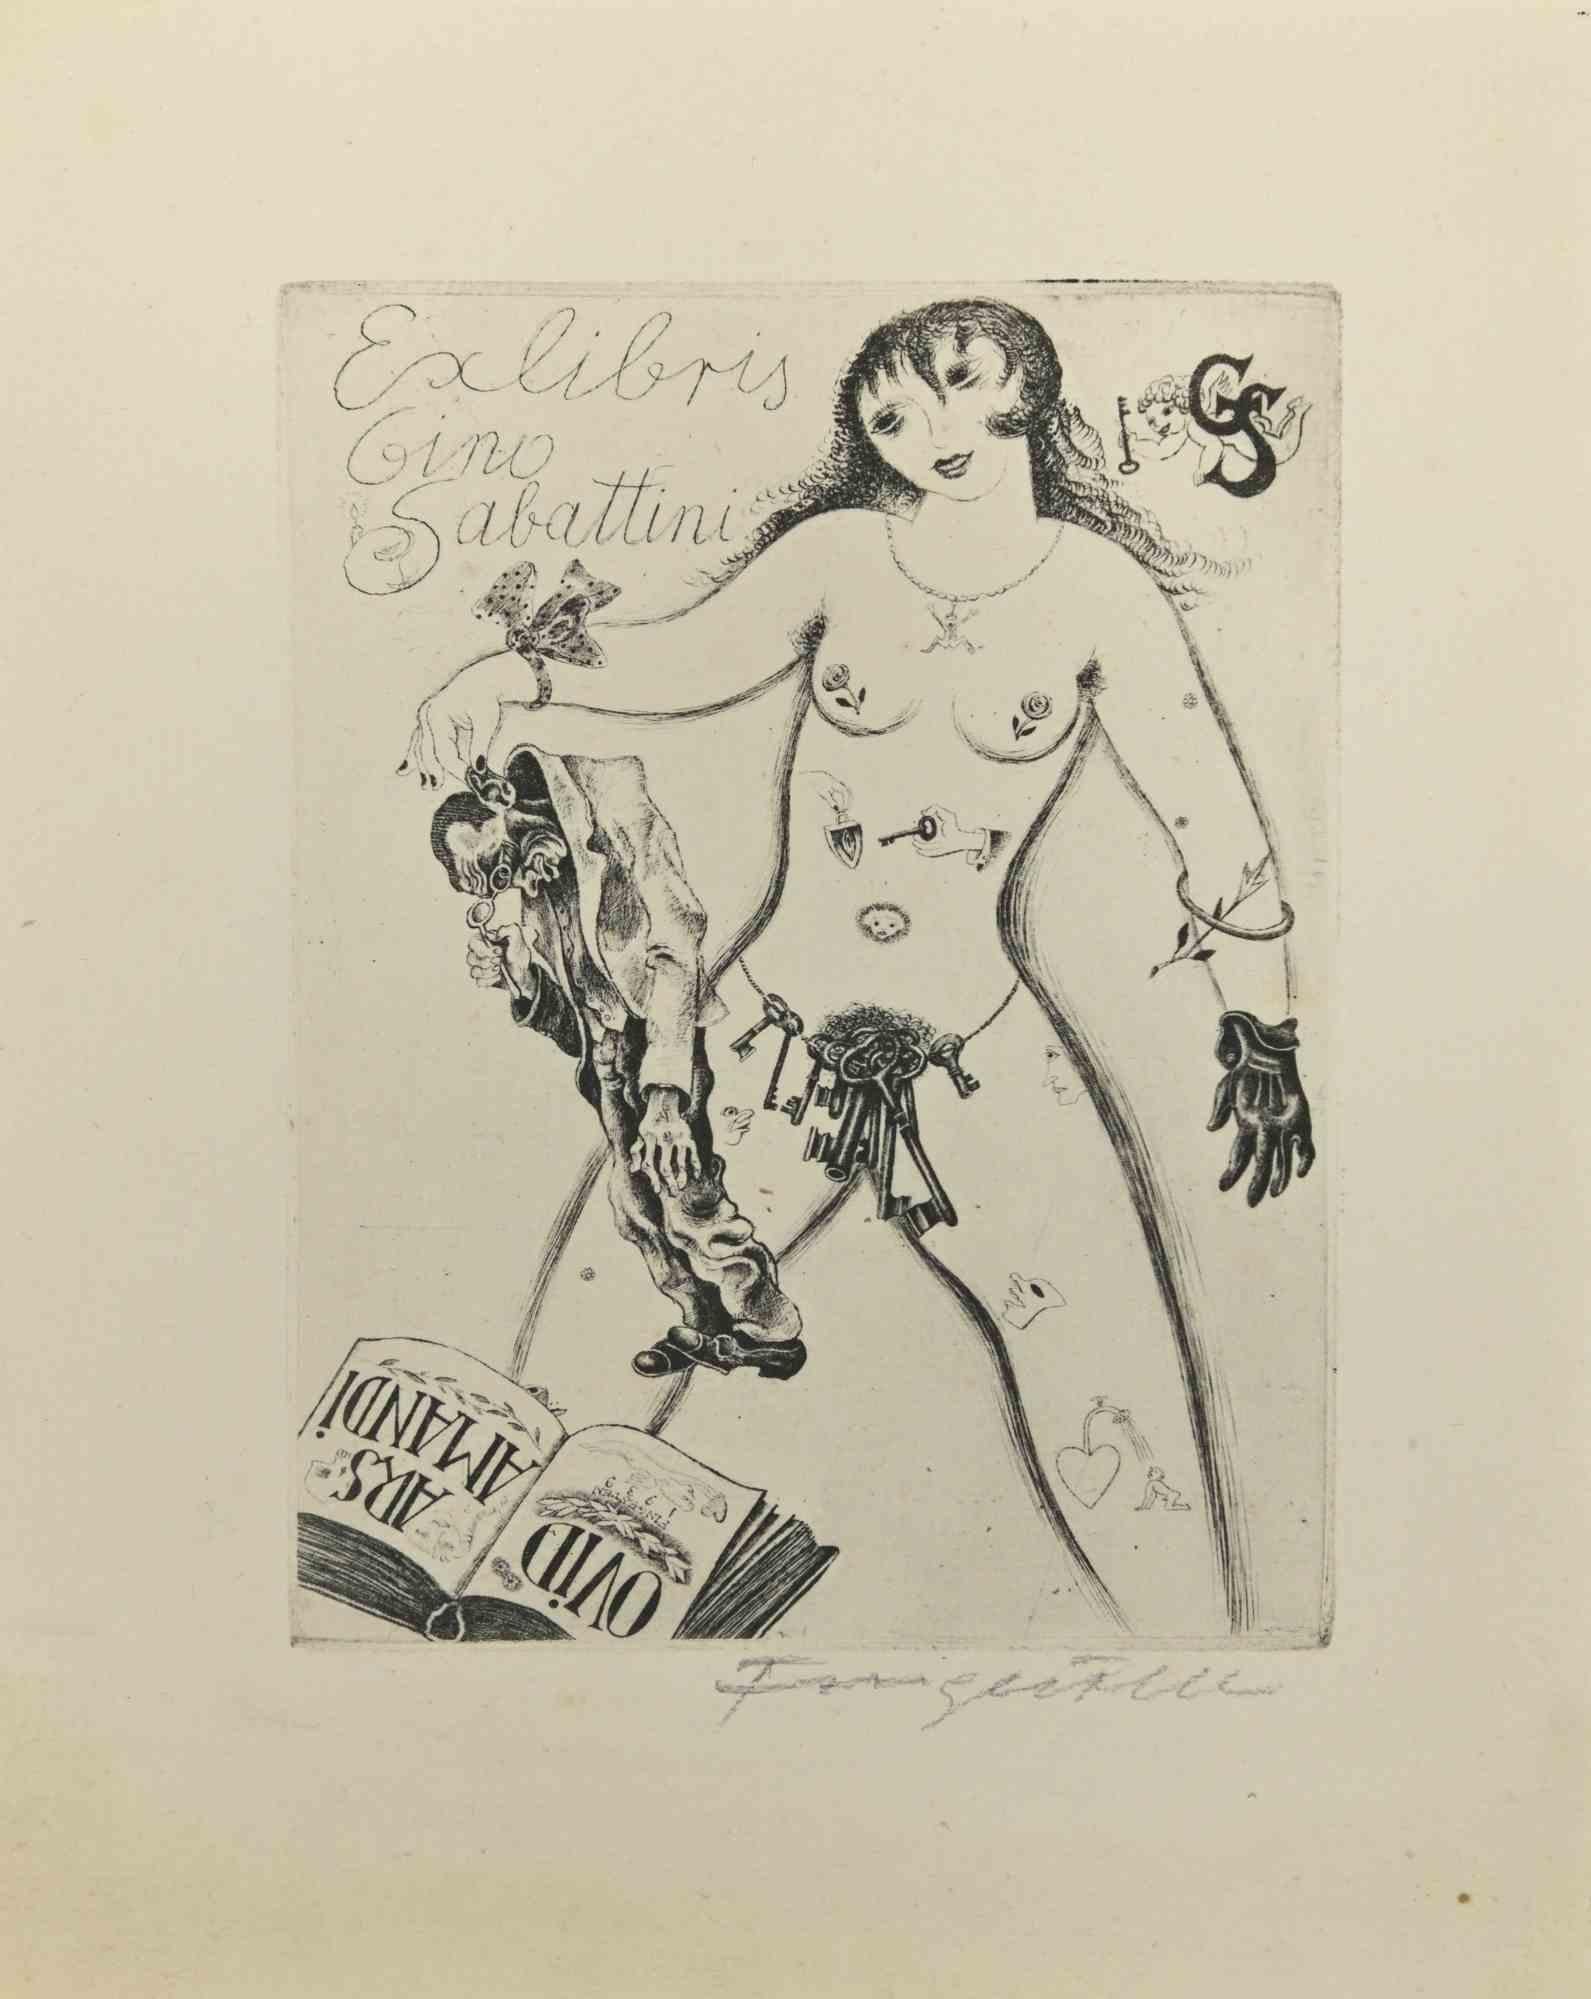 Ex Libris - Gino Sabattini ist eine Radierung erstellt von  Michel Fingesten.

Handsigniert am unteren Rand.

Guter Zustand mit Ausnahme einiger Stockflecken, die das Bild nicht beeinträchtigen.

Michel Fingesten (1884 - 1943) war ein tschechischer